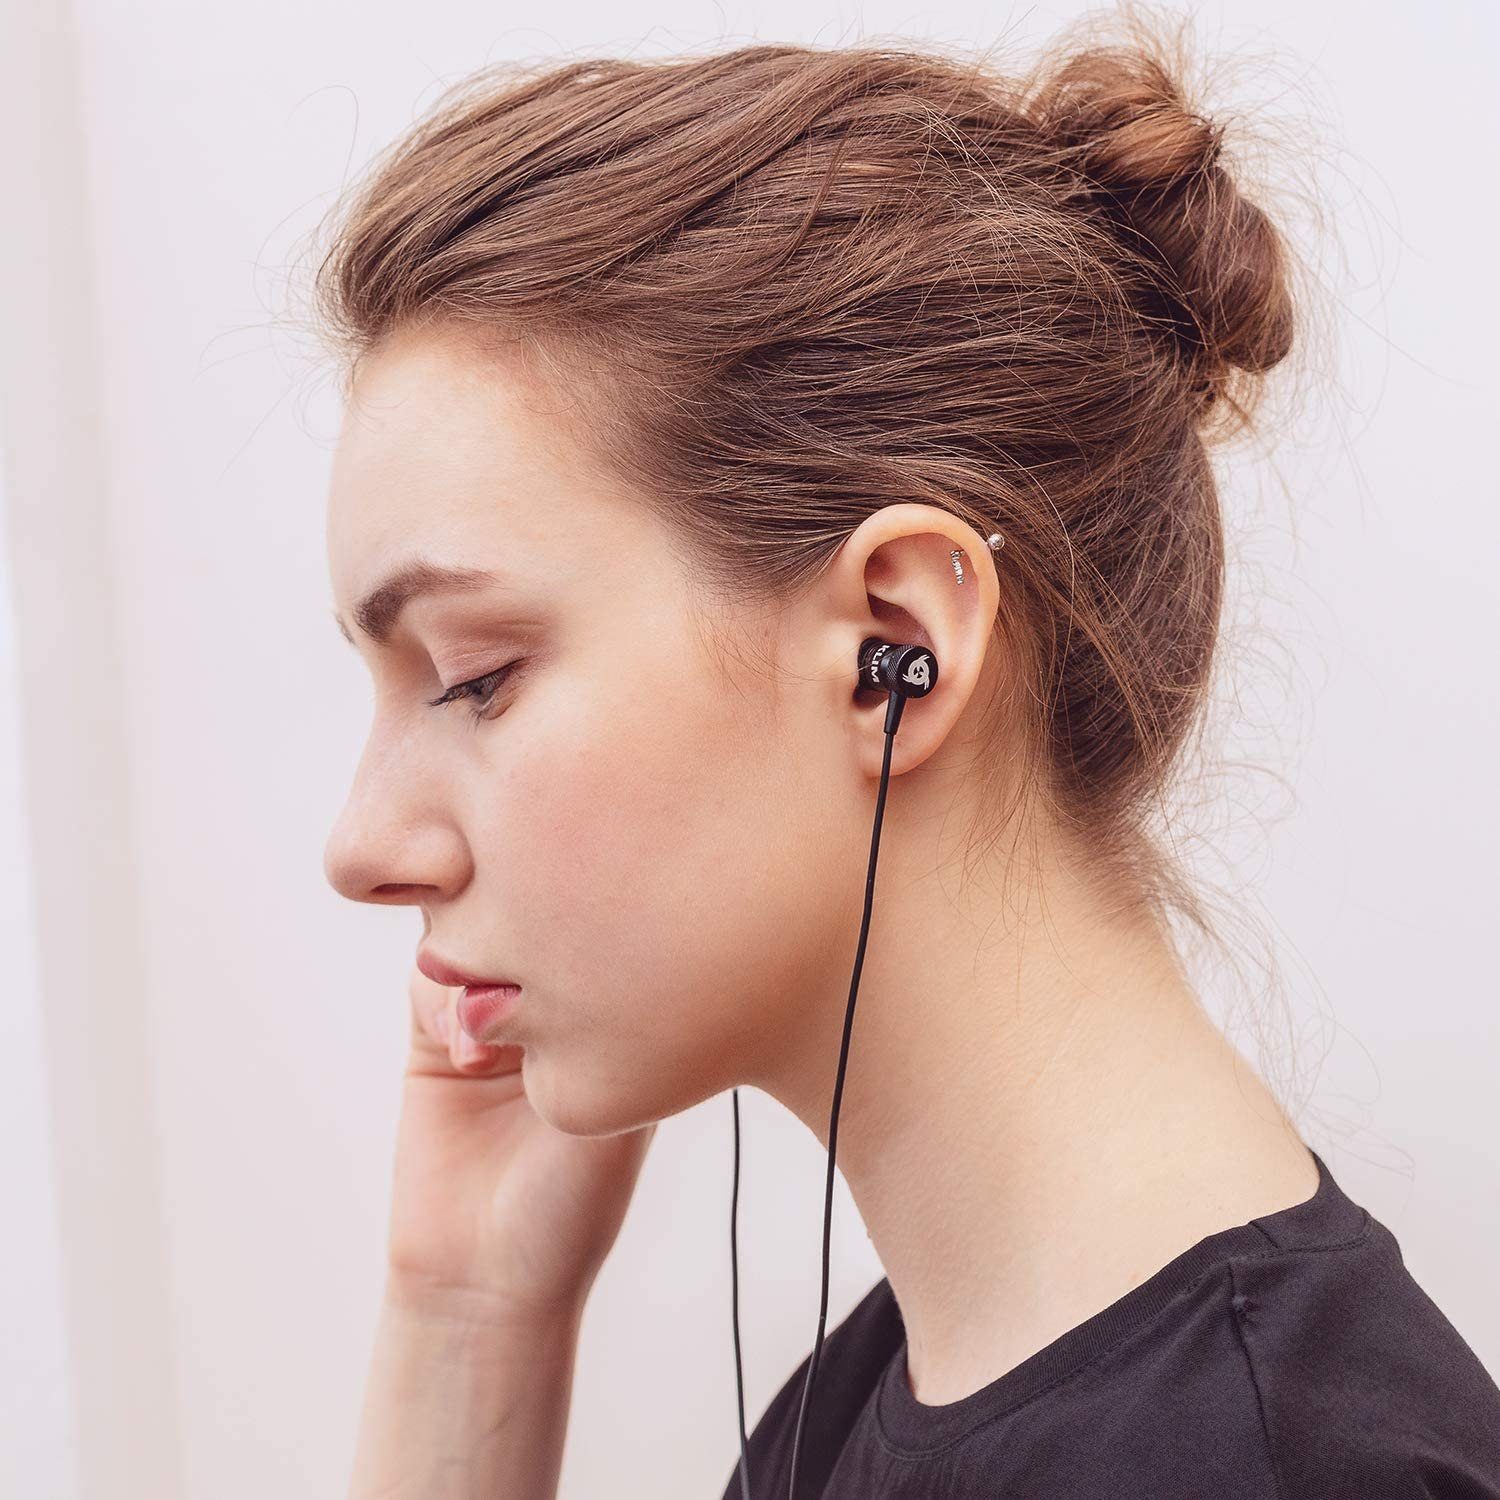 KLIM Fusion In-Ear-Kopfhörer (3,5mm Stöpsel) Klinkenanschluss, Memory Rosagold Foam